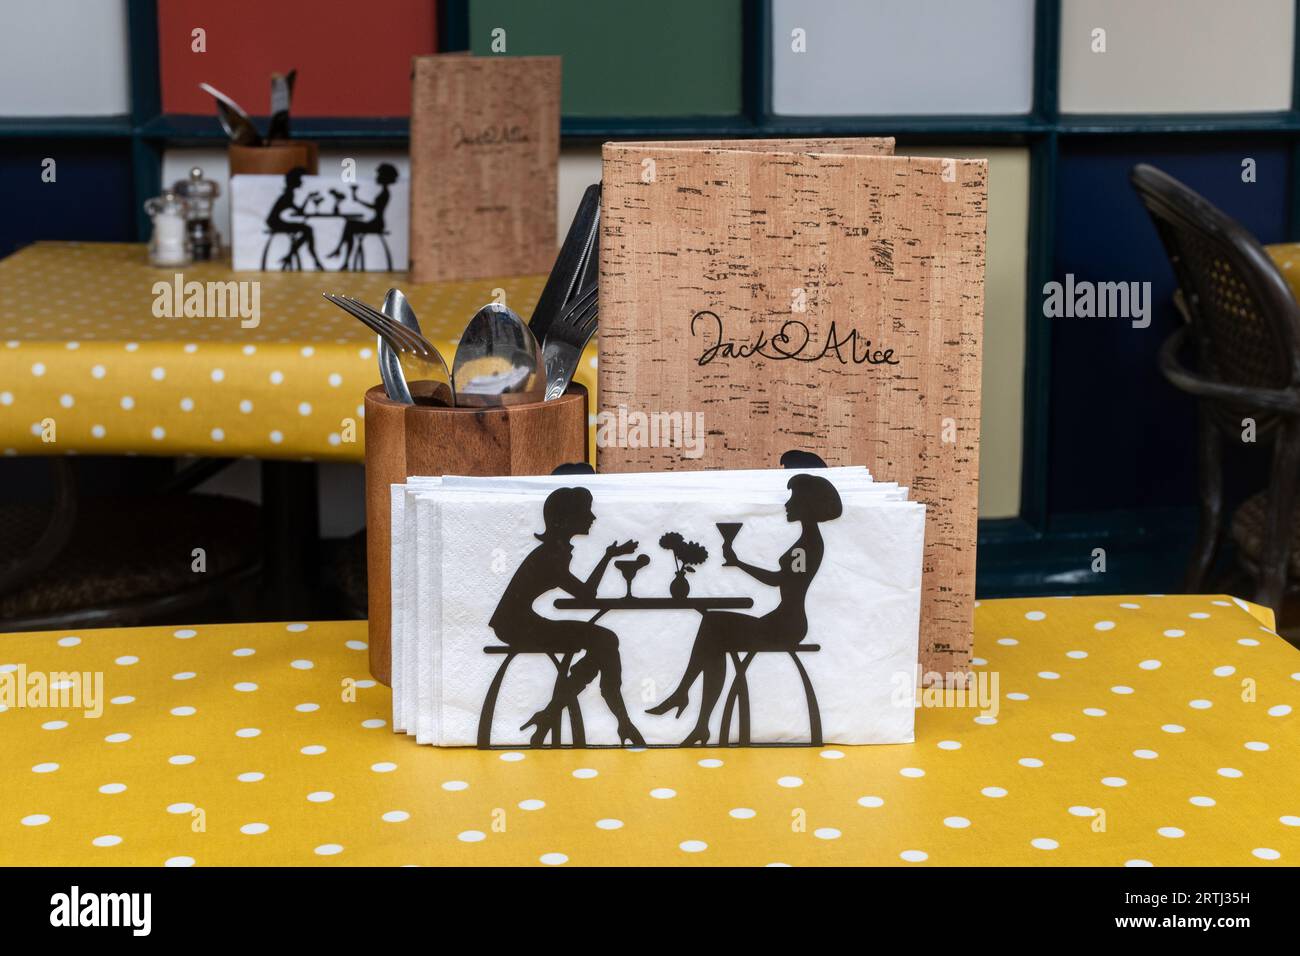 Mesas fuera de un restaurante con servilletas inusuales, cubiertos y menú, Inglaterra, Reino Unido Foto de stock